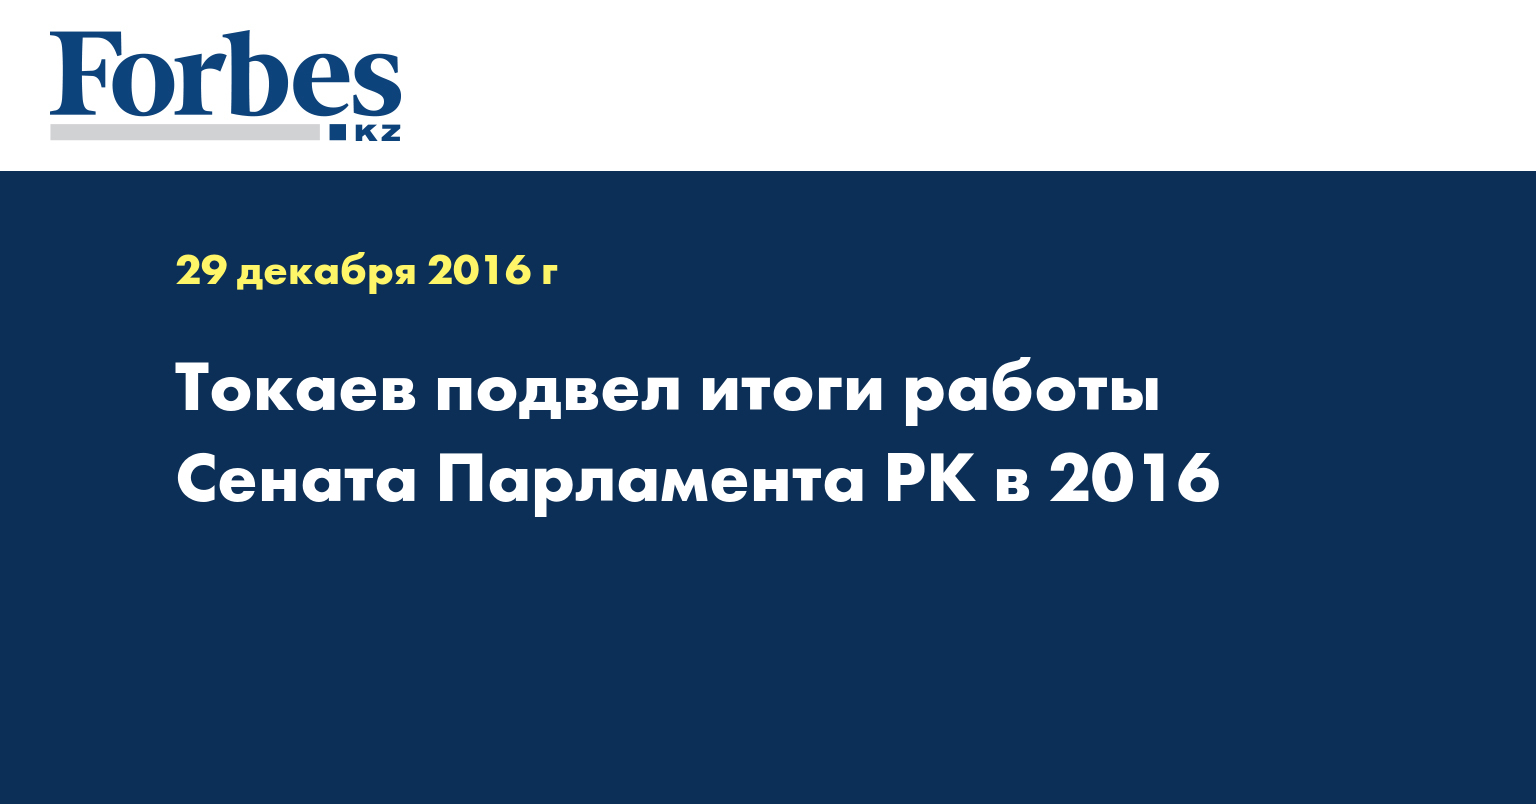 Токаев подвел итоги работы Сената Парламента РК в 2016 